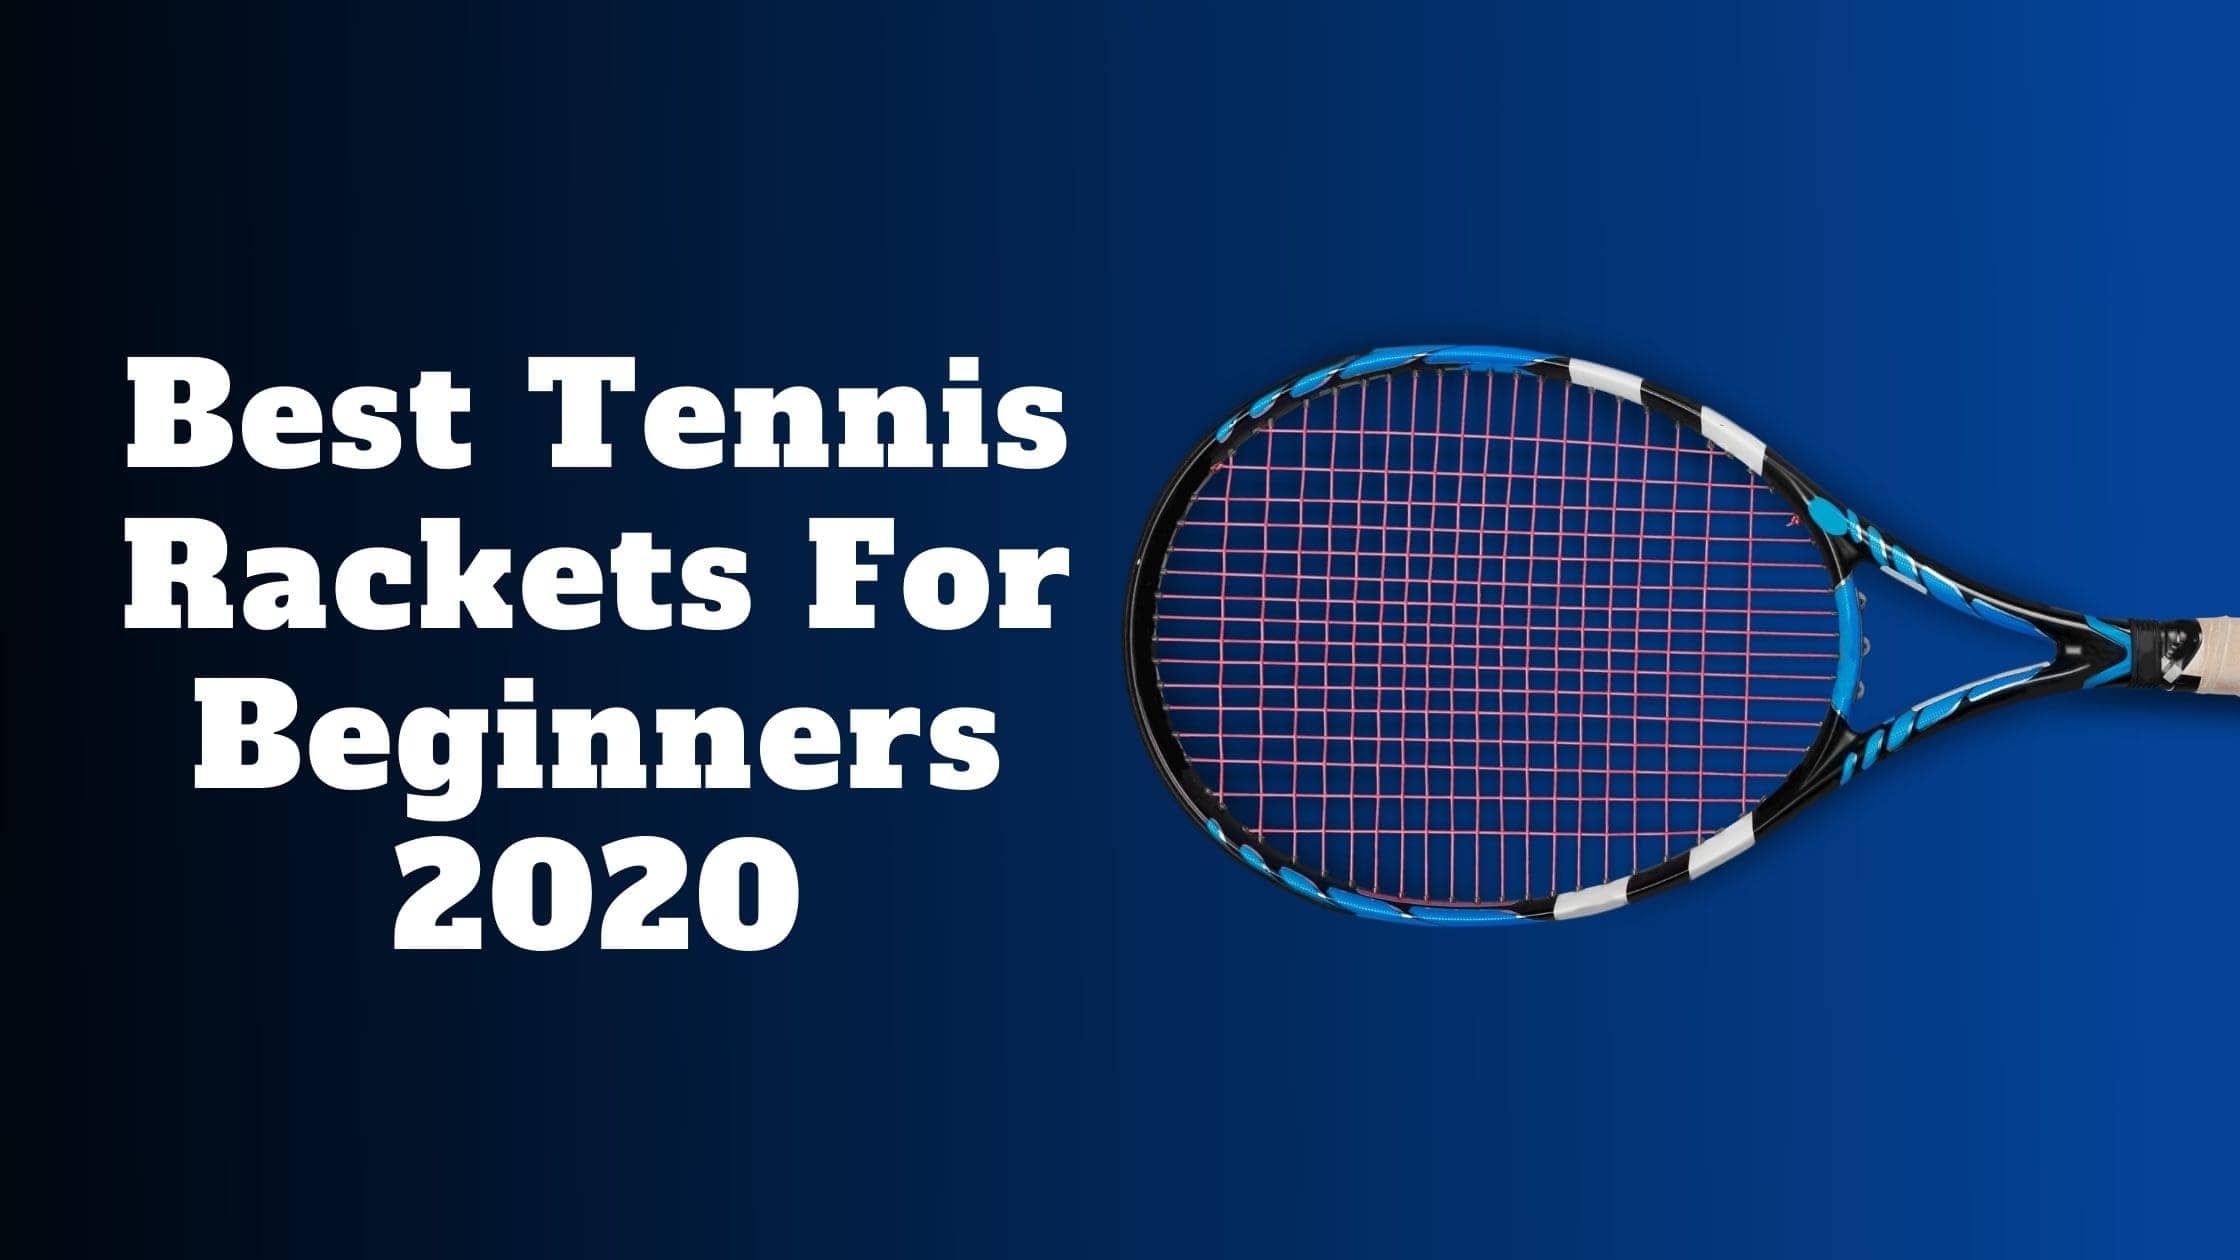 Best Tennis Rackets For Beginners 2020